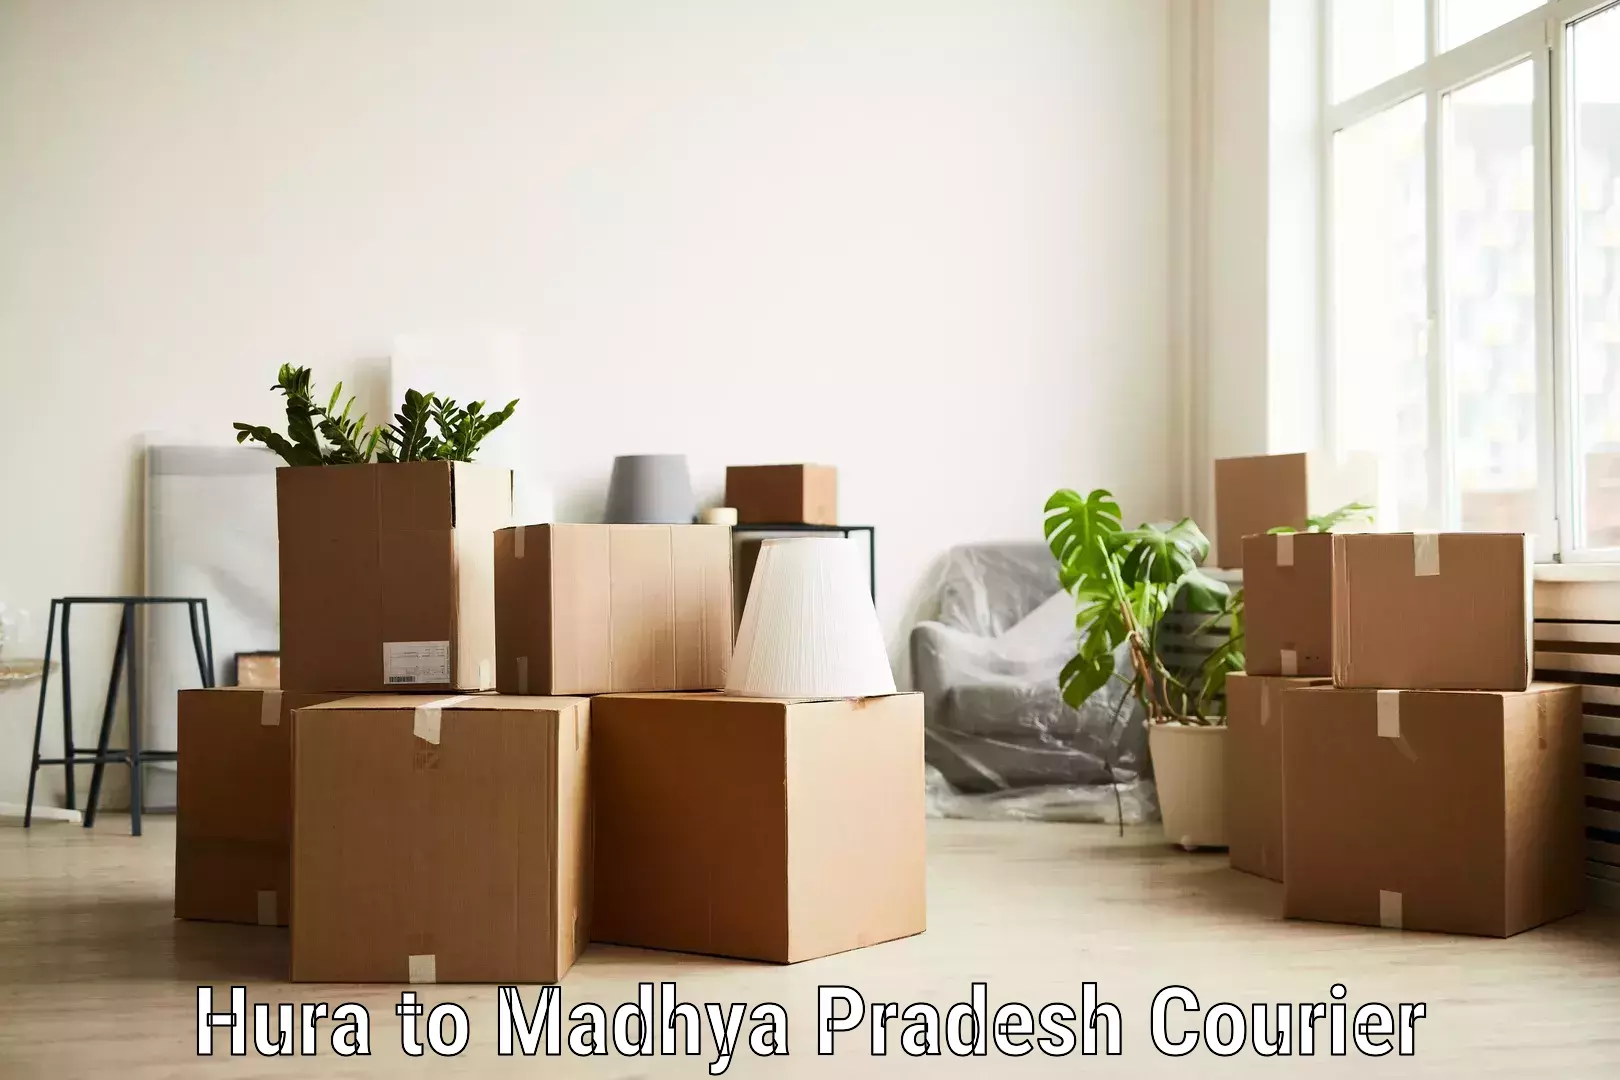 Urgent courier needs Hura to Madhya Pradesh